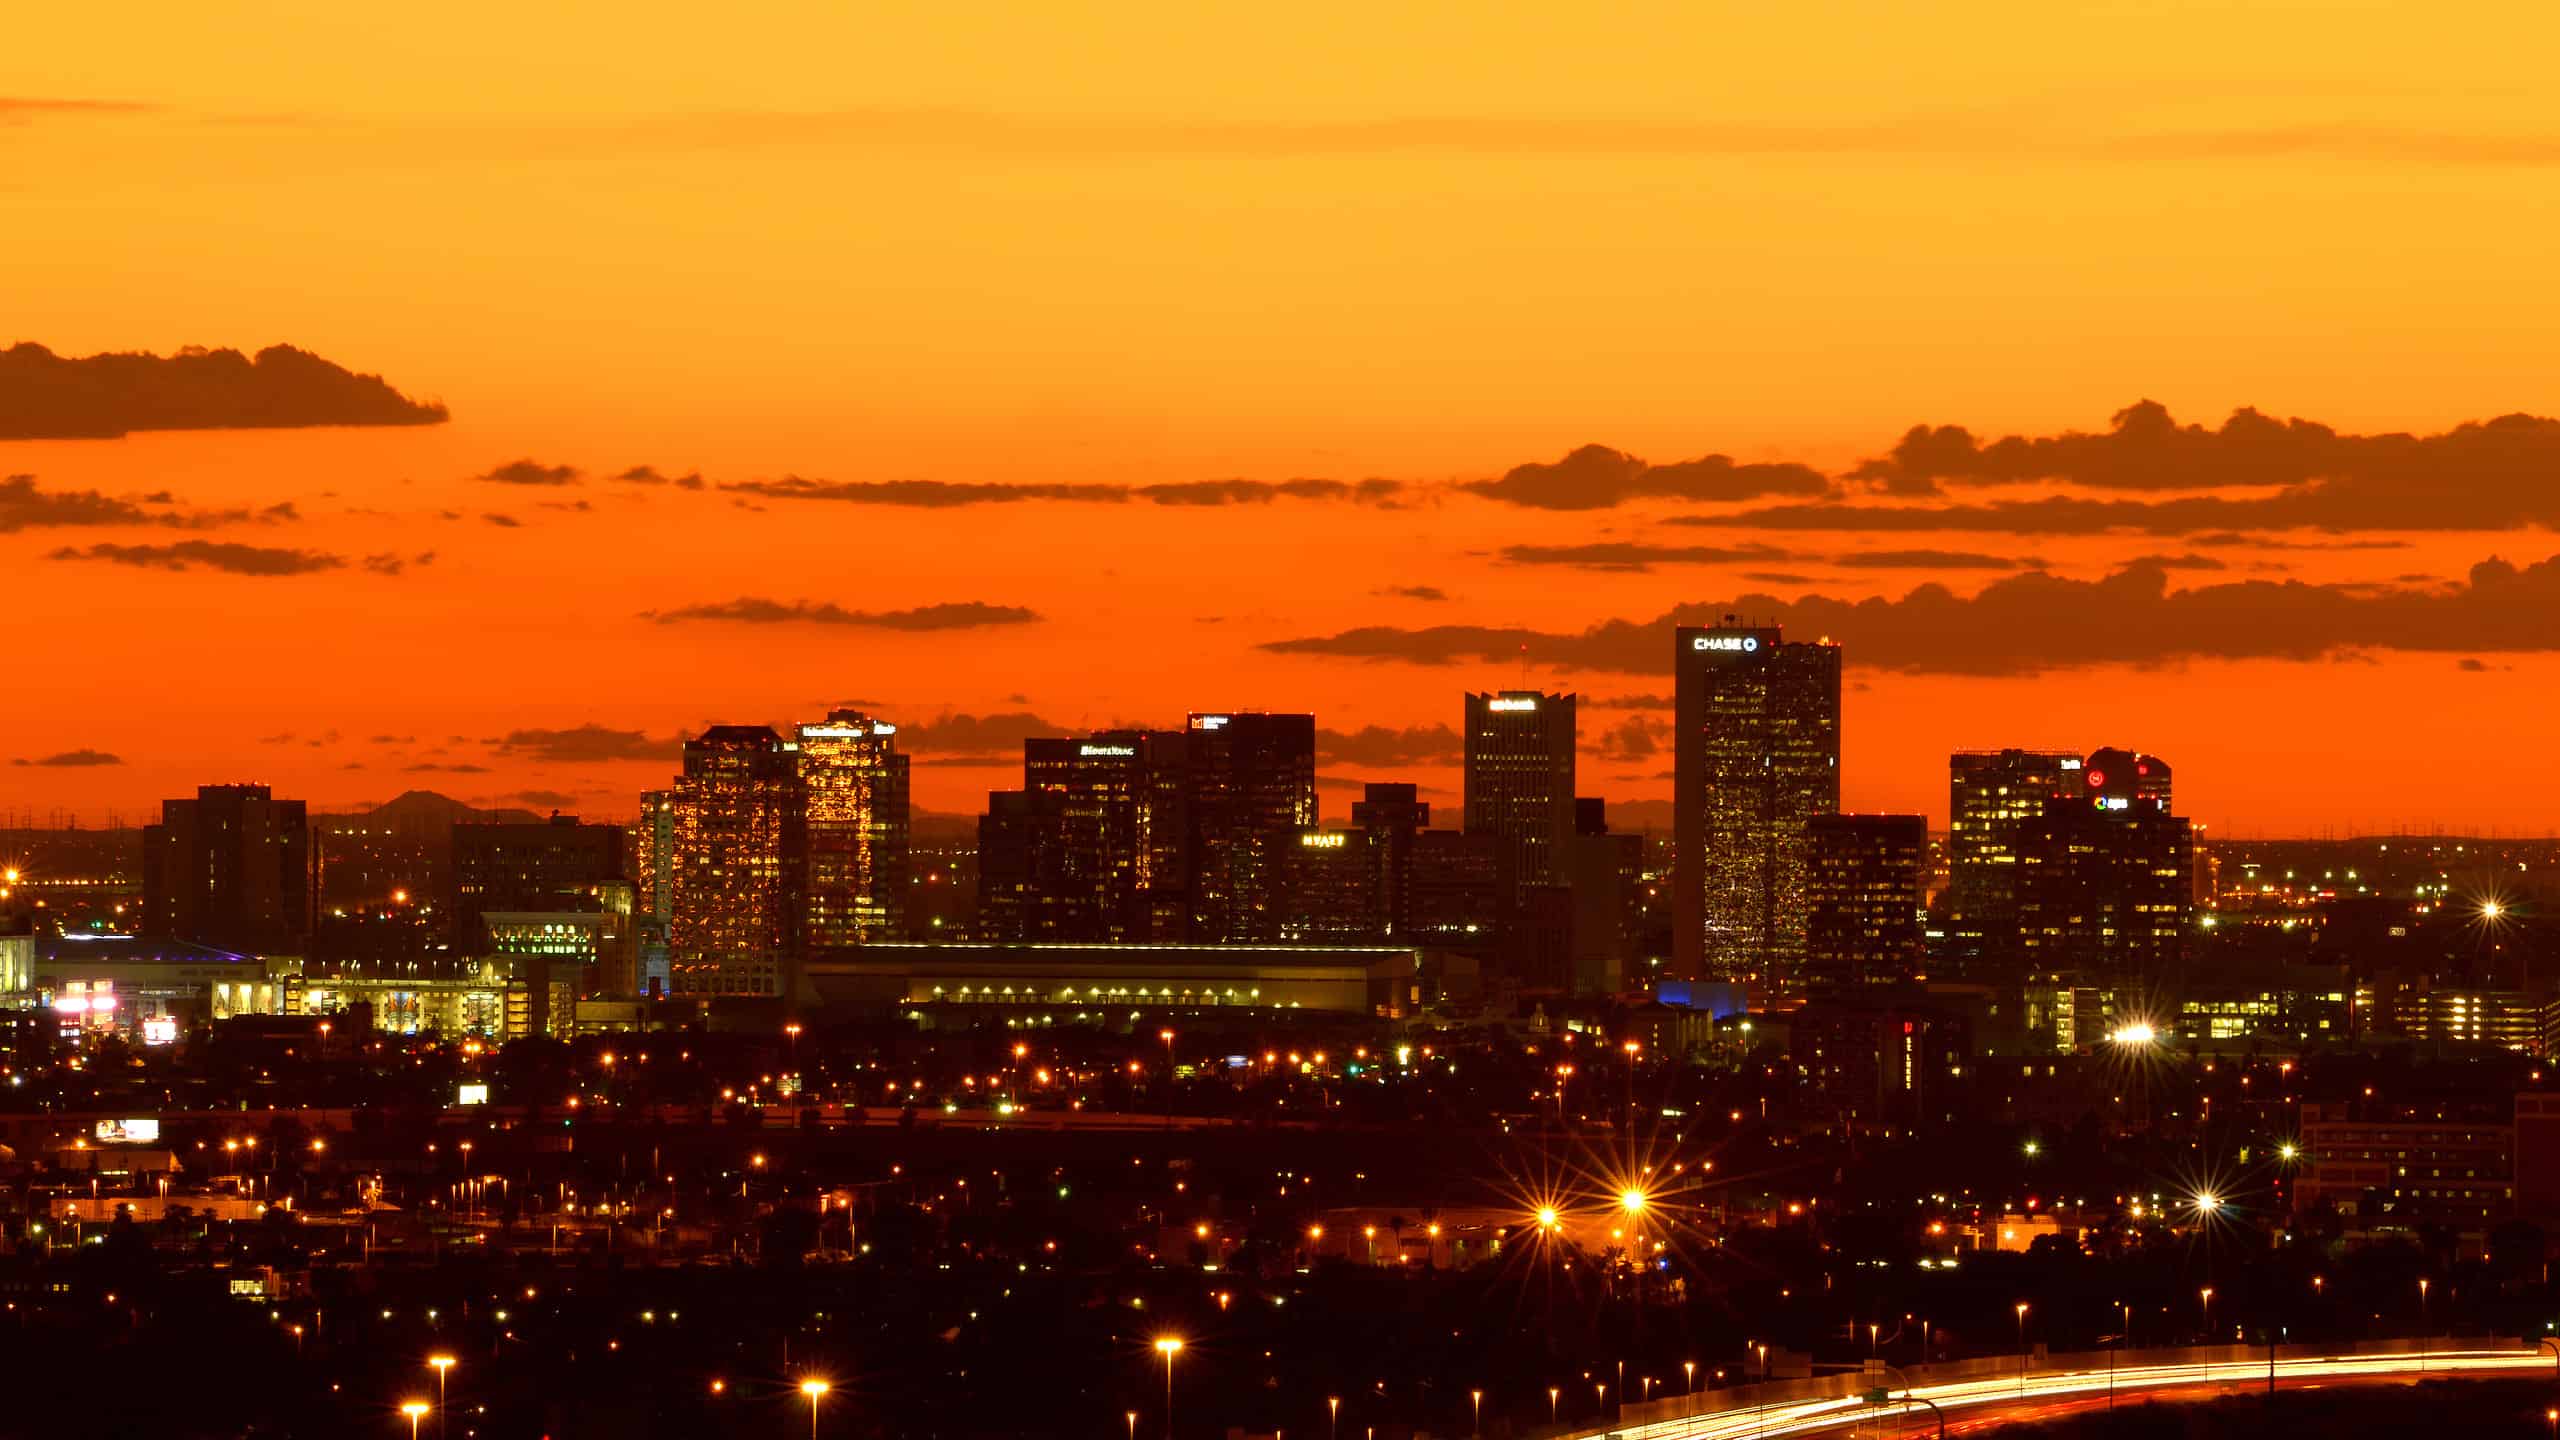 Downtown Phoenix Arizona at sunset